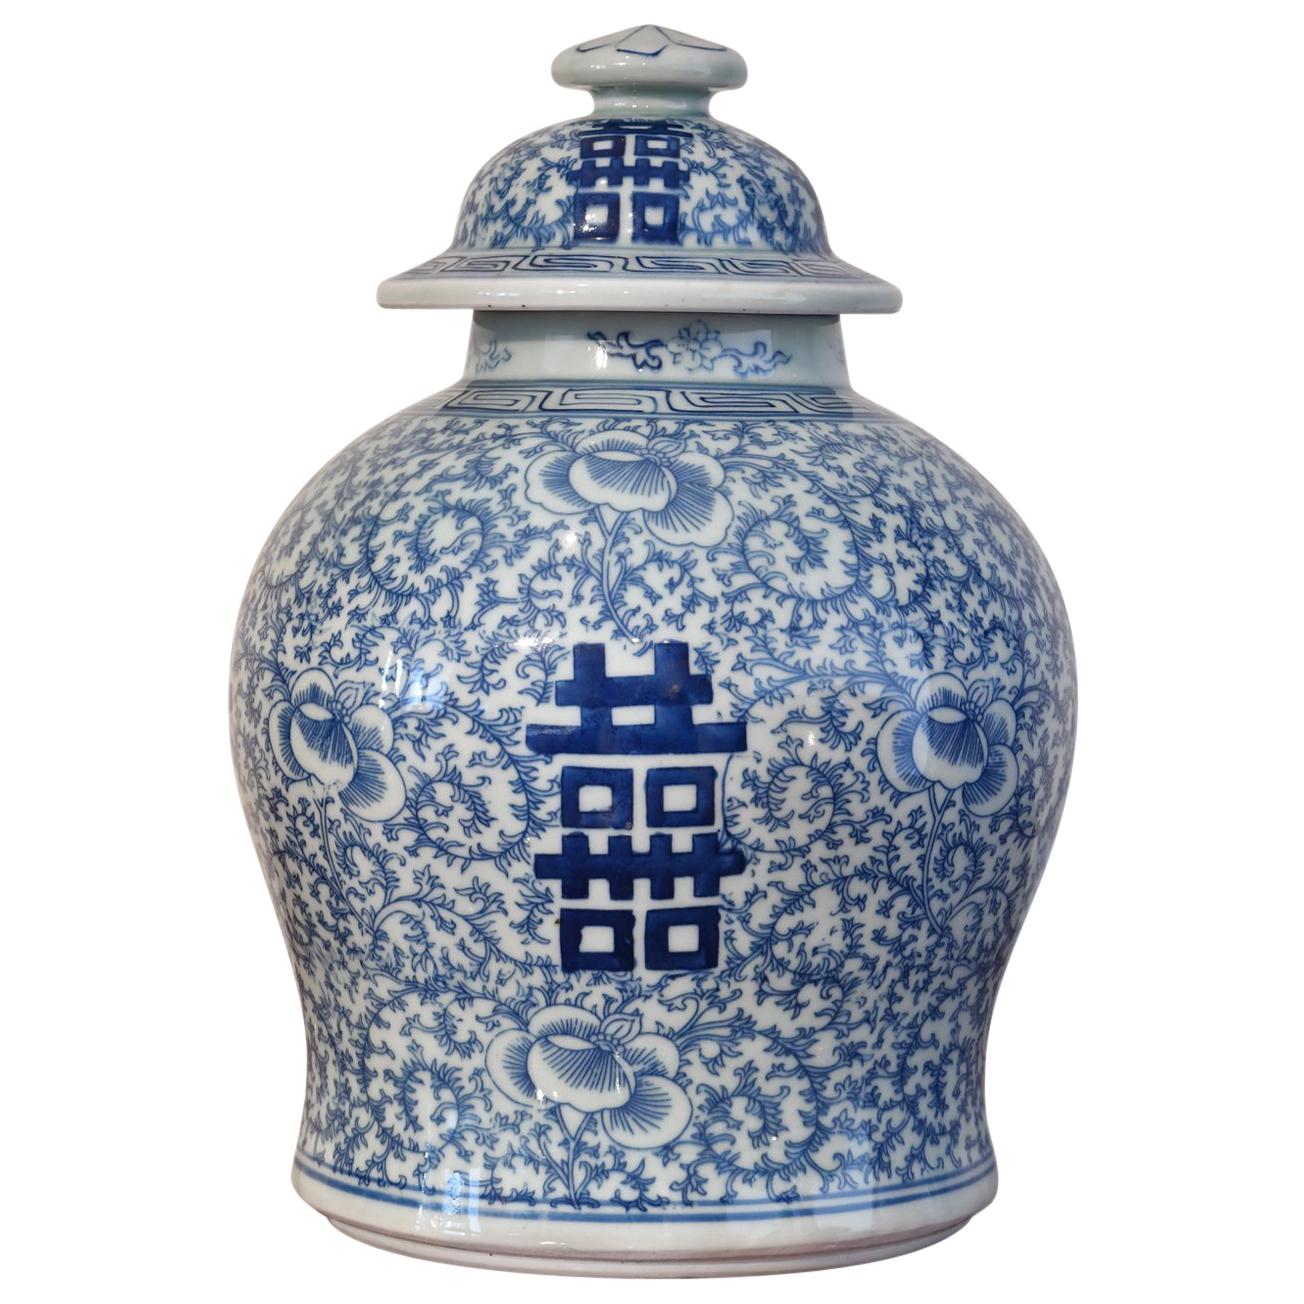 Pot à couvercle bleu et blanc en porcelaine chinoise Qing avec Shuang-xi ou double bonheur